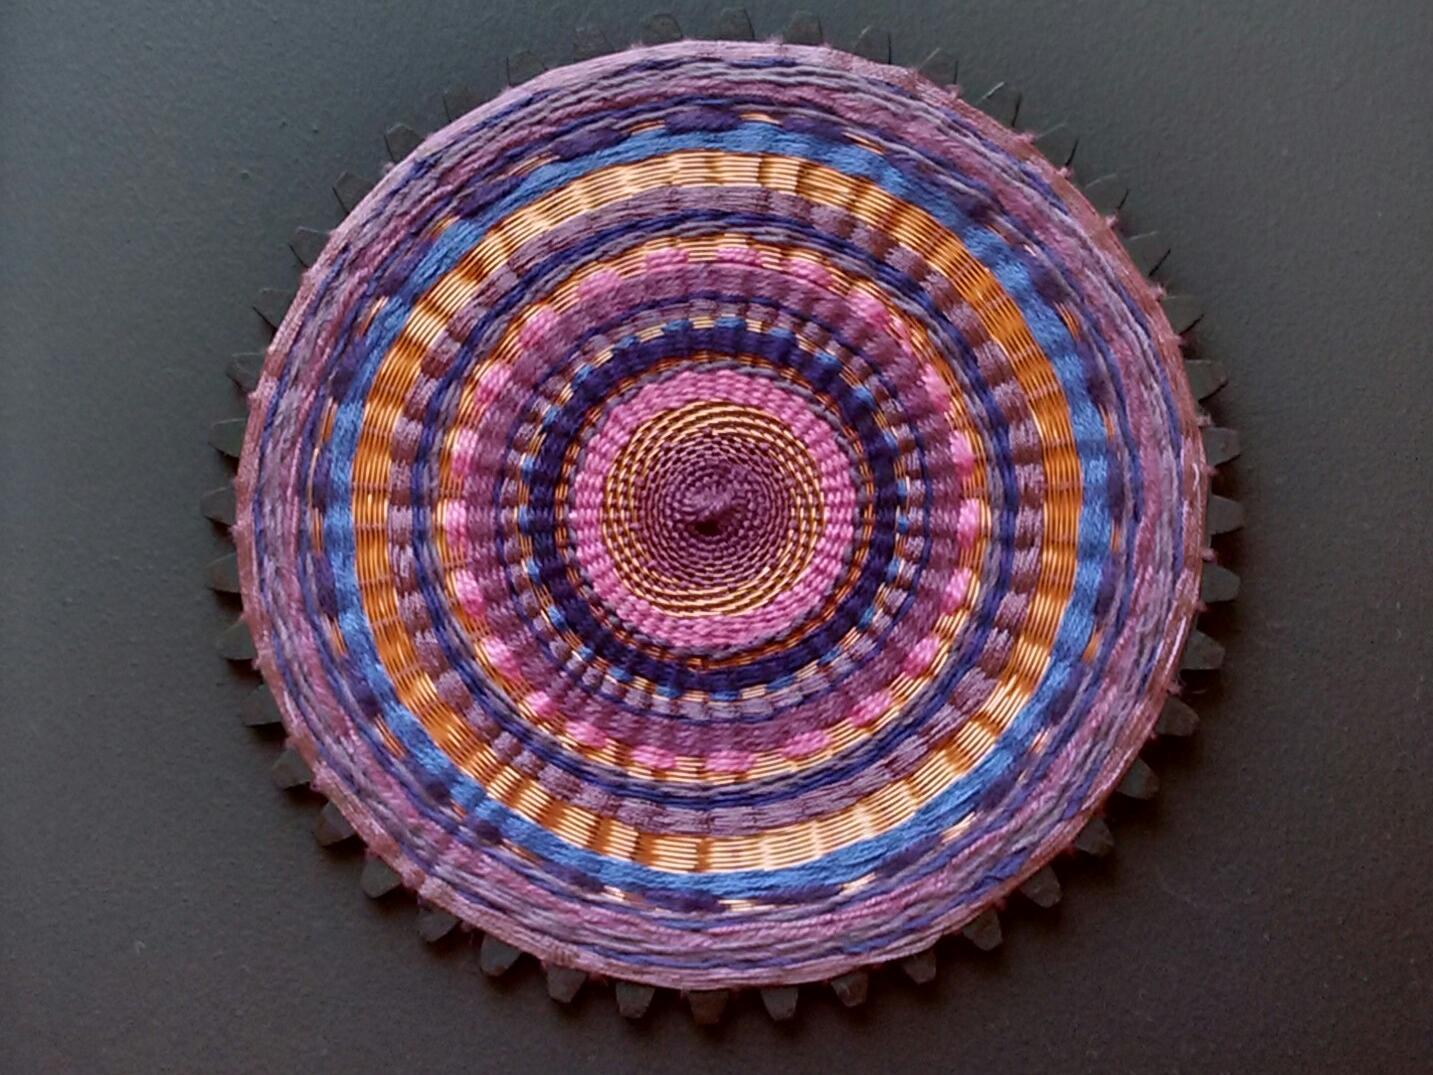 Cuadro textil circular en tonor purpuras y naranjas